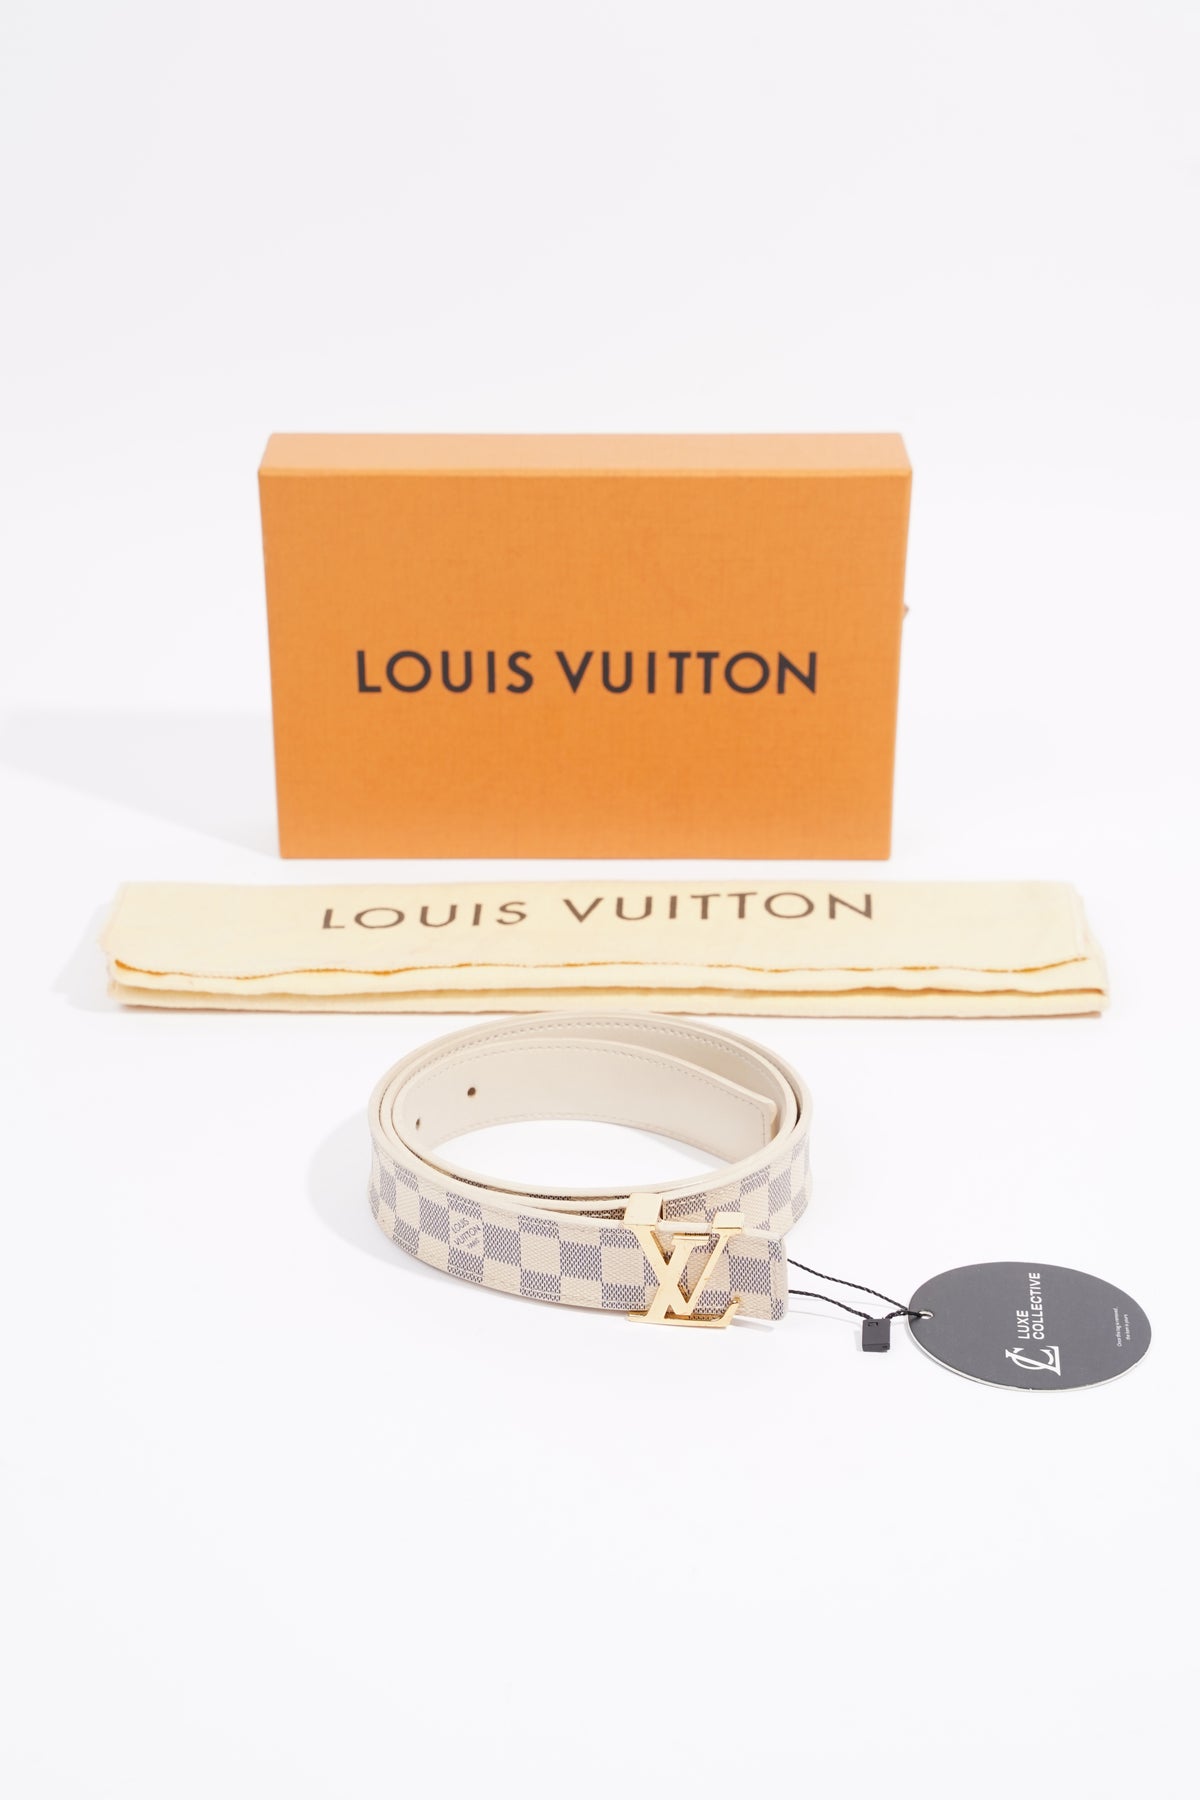 Louis Vuitton Damier Azur Canvas Tresor Belt Size 80 cm Louis Vuitton